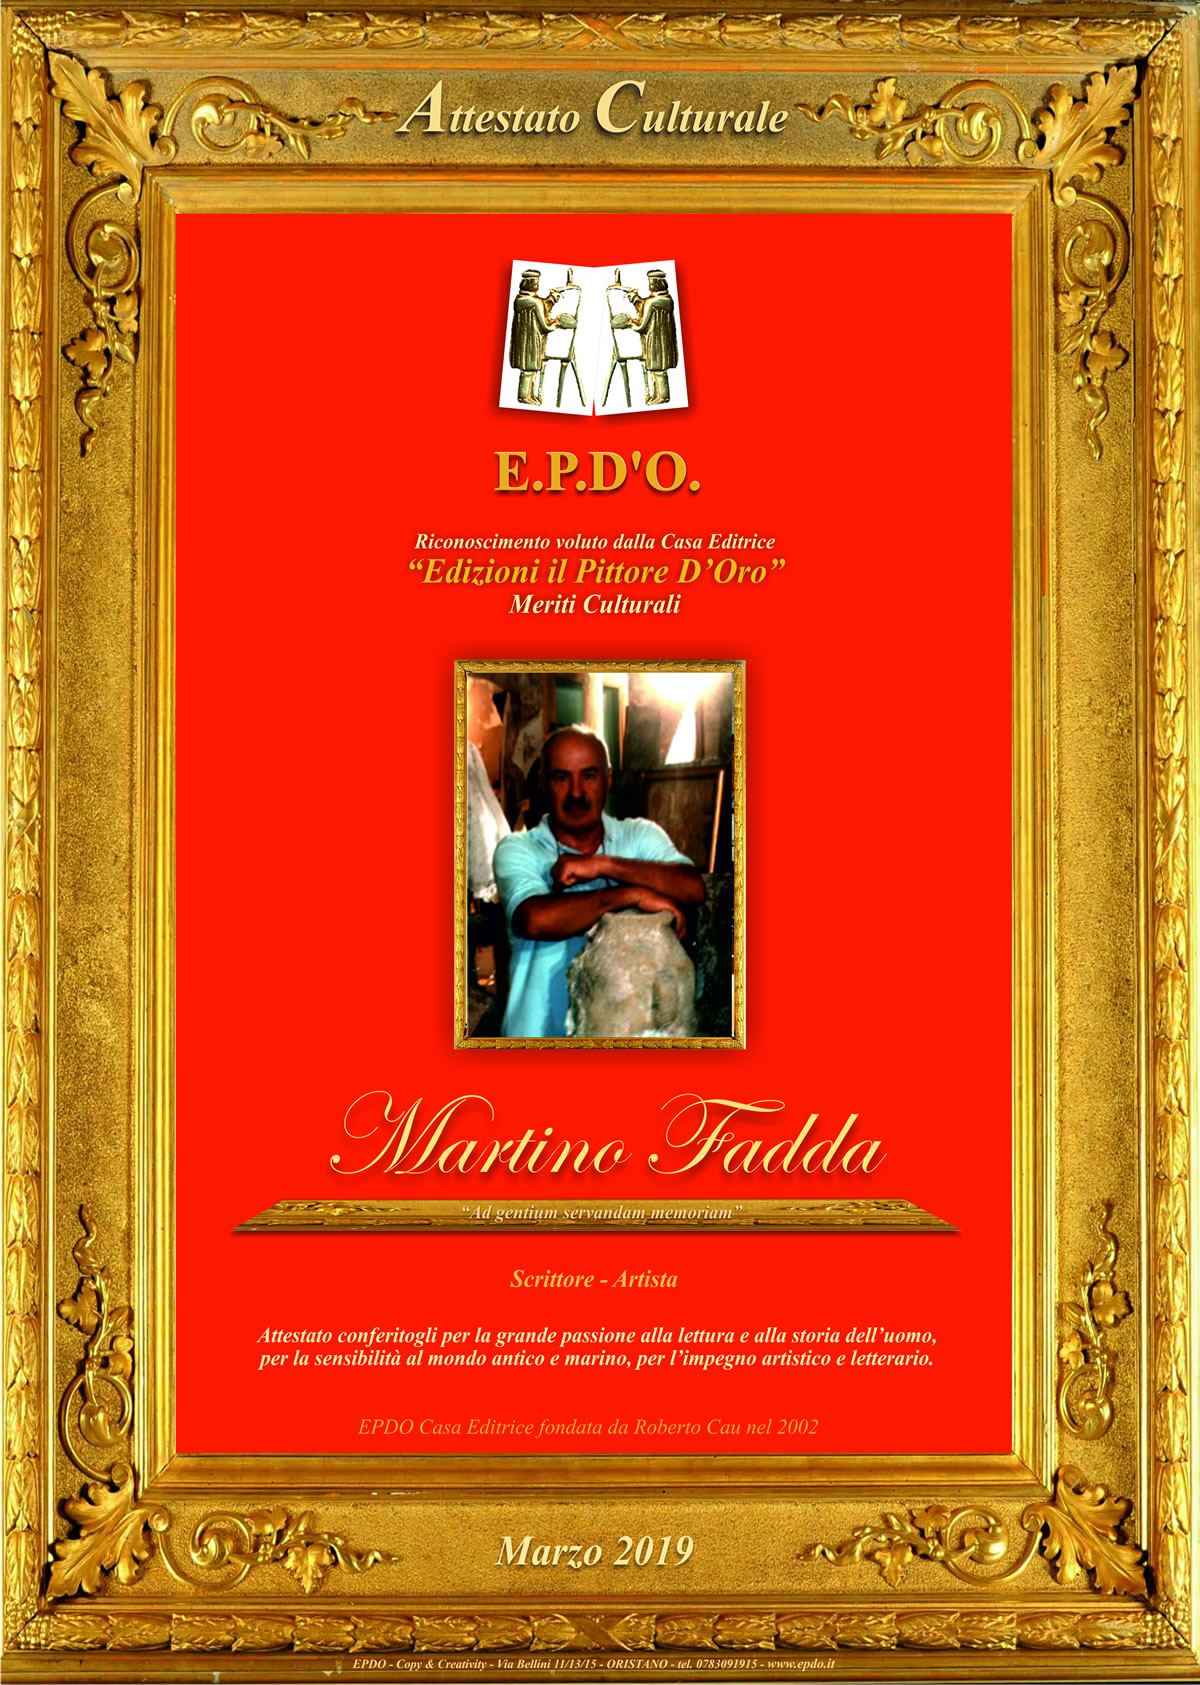 EPDO - Attestato Culturale Martino Fadda